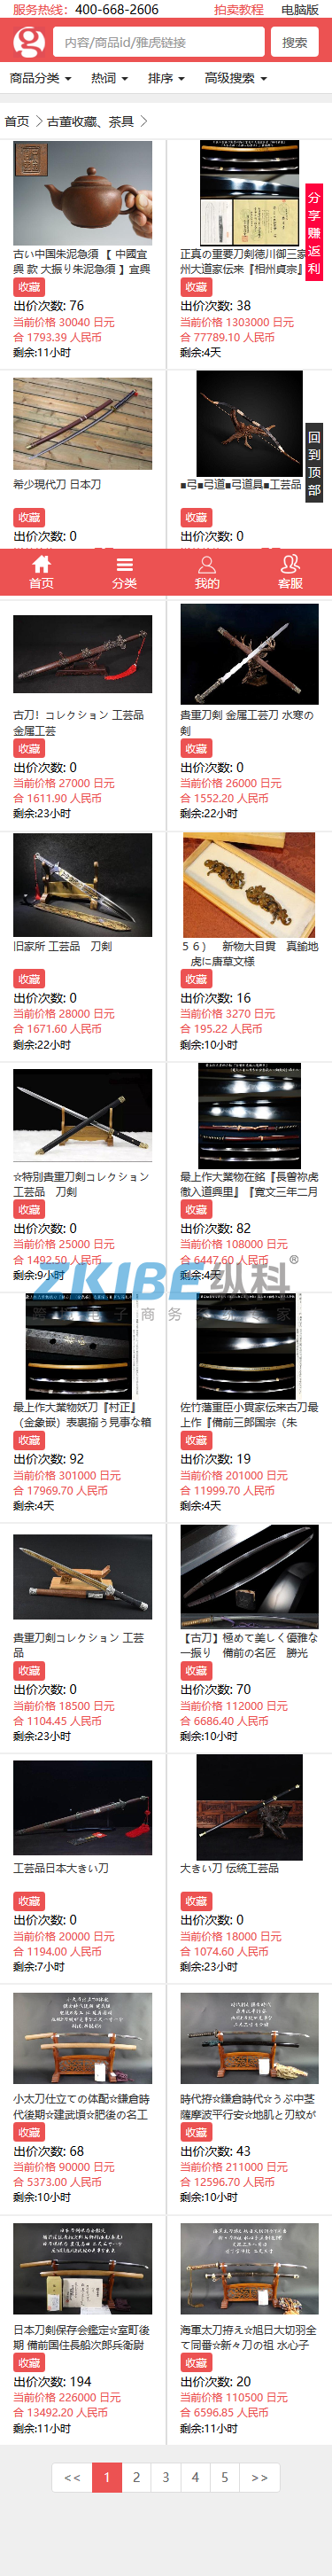 日本雅虎代拍系统-商品列表页面